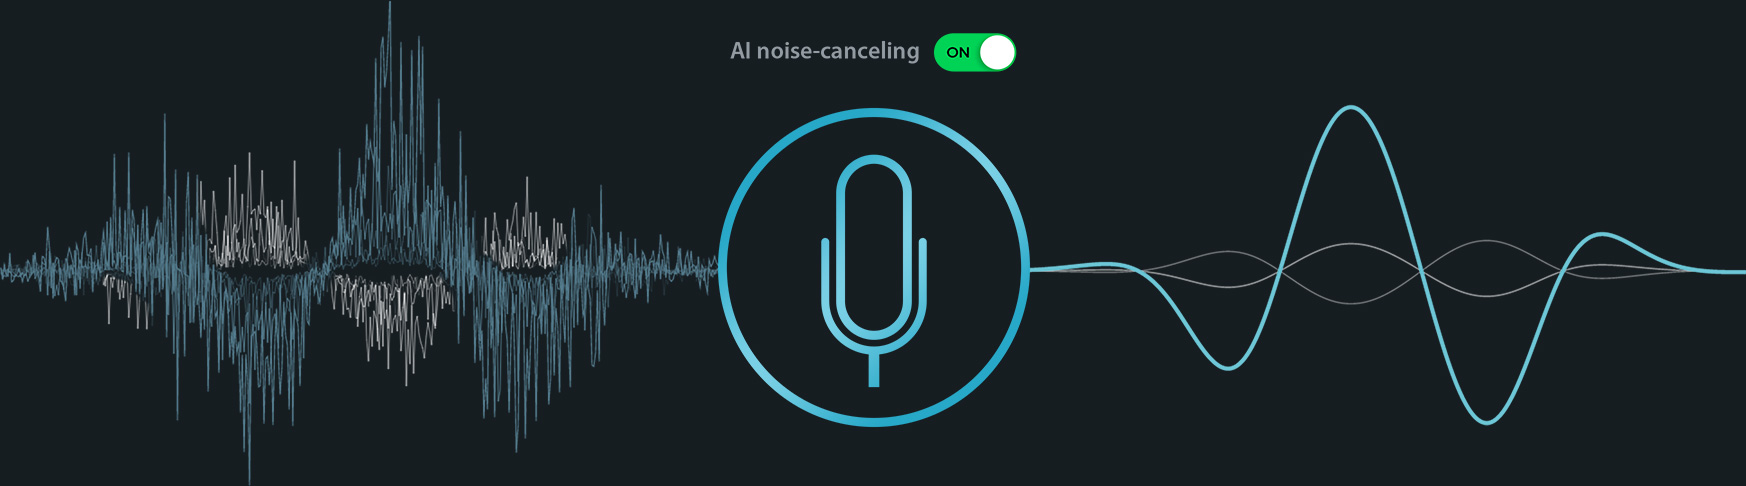 imagem ilustrativa cancelamento de ruído